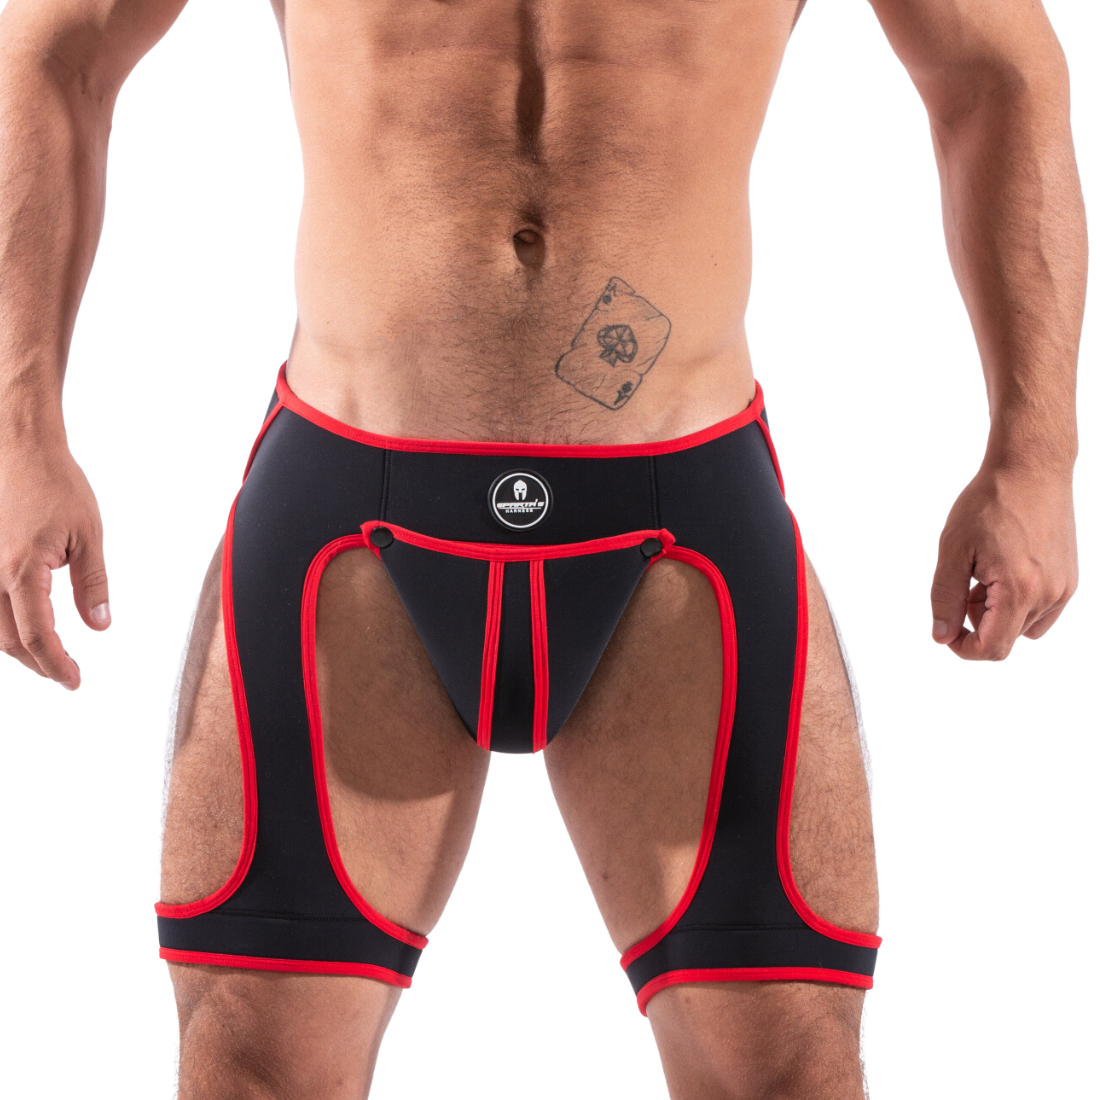 Sexy Rood en zwarte jockstrap met beenharnas, ontworpen door het Italiaanse modehuis Sparta’s Harness. Perfect voor gay mannen en te koop bij Flavourez.